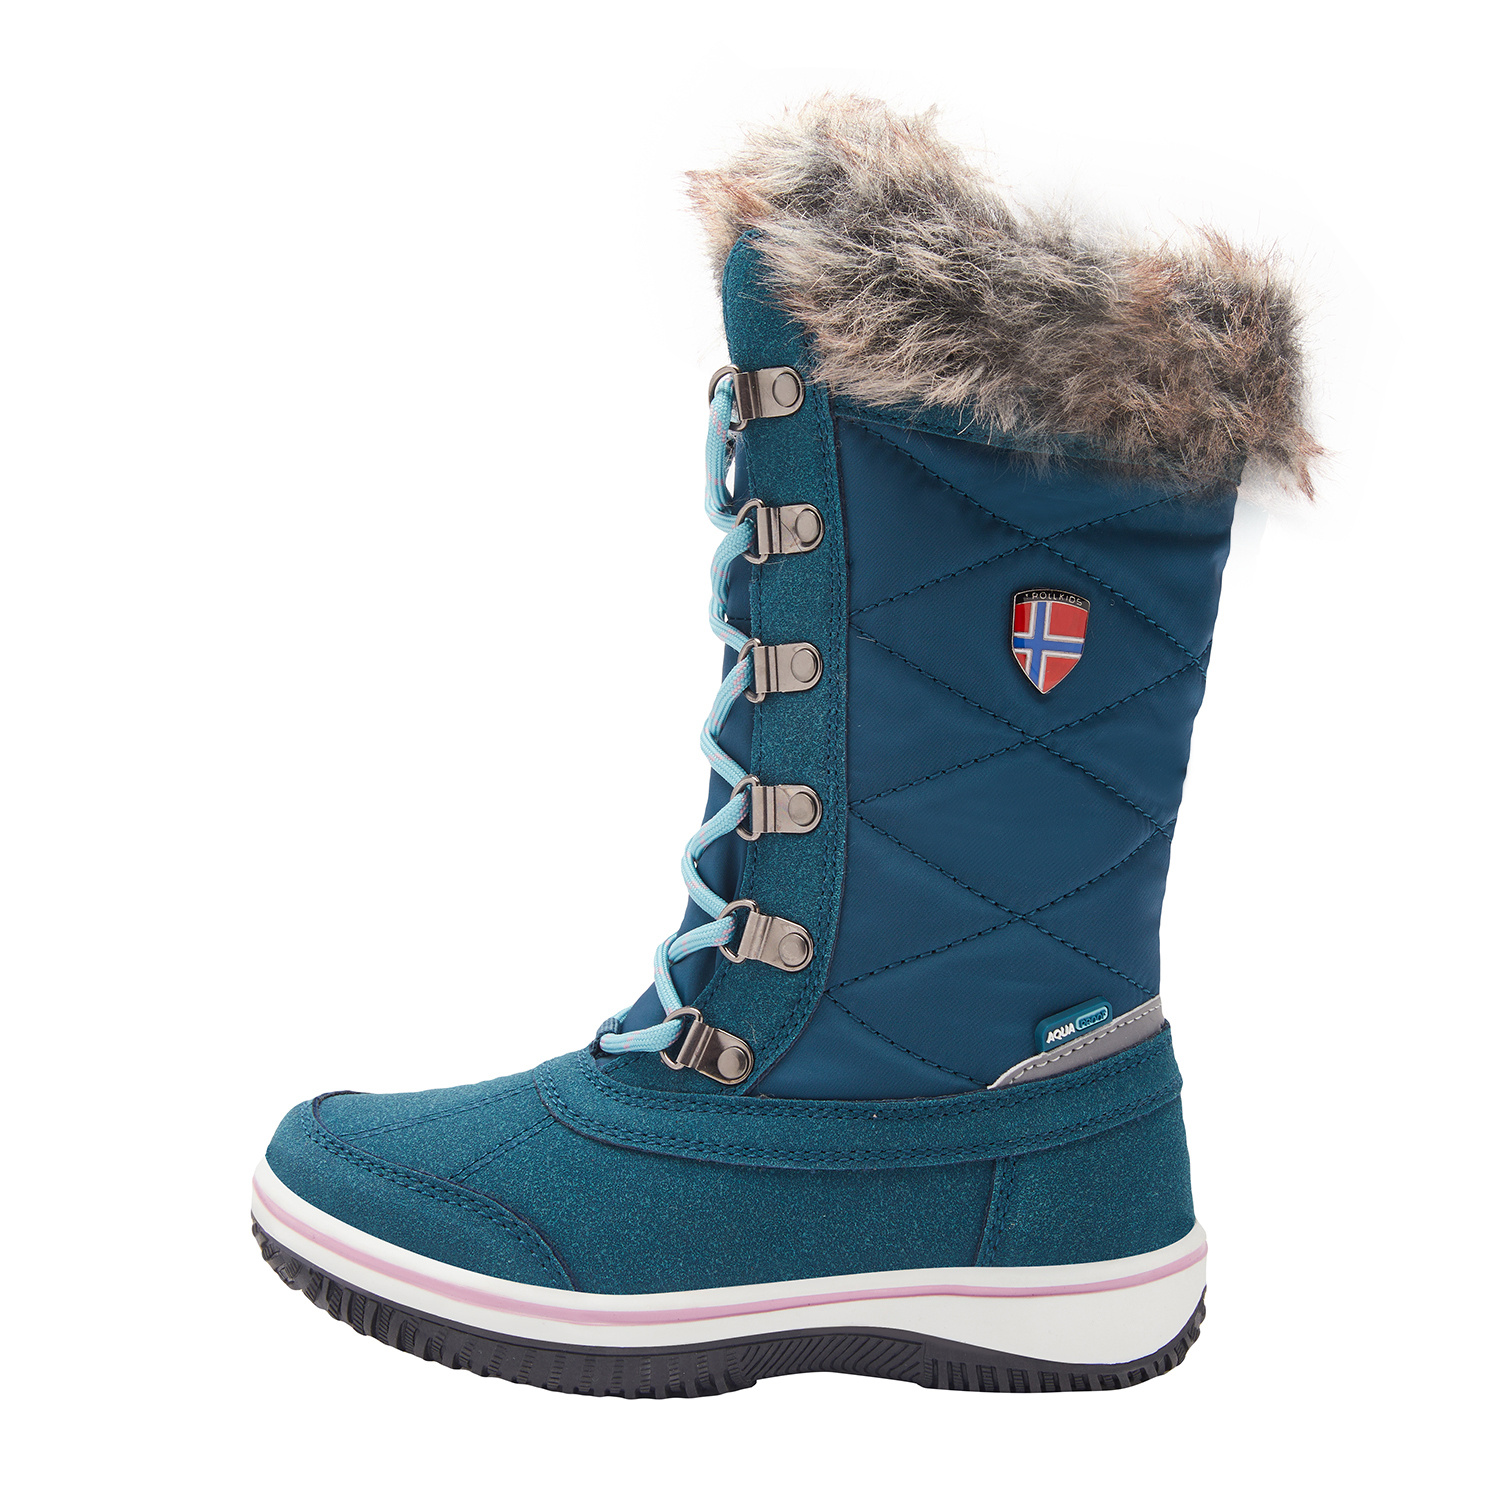 Trollkids Girls Holmenkollen Snow Boots teal/aqua